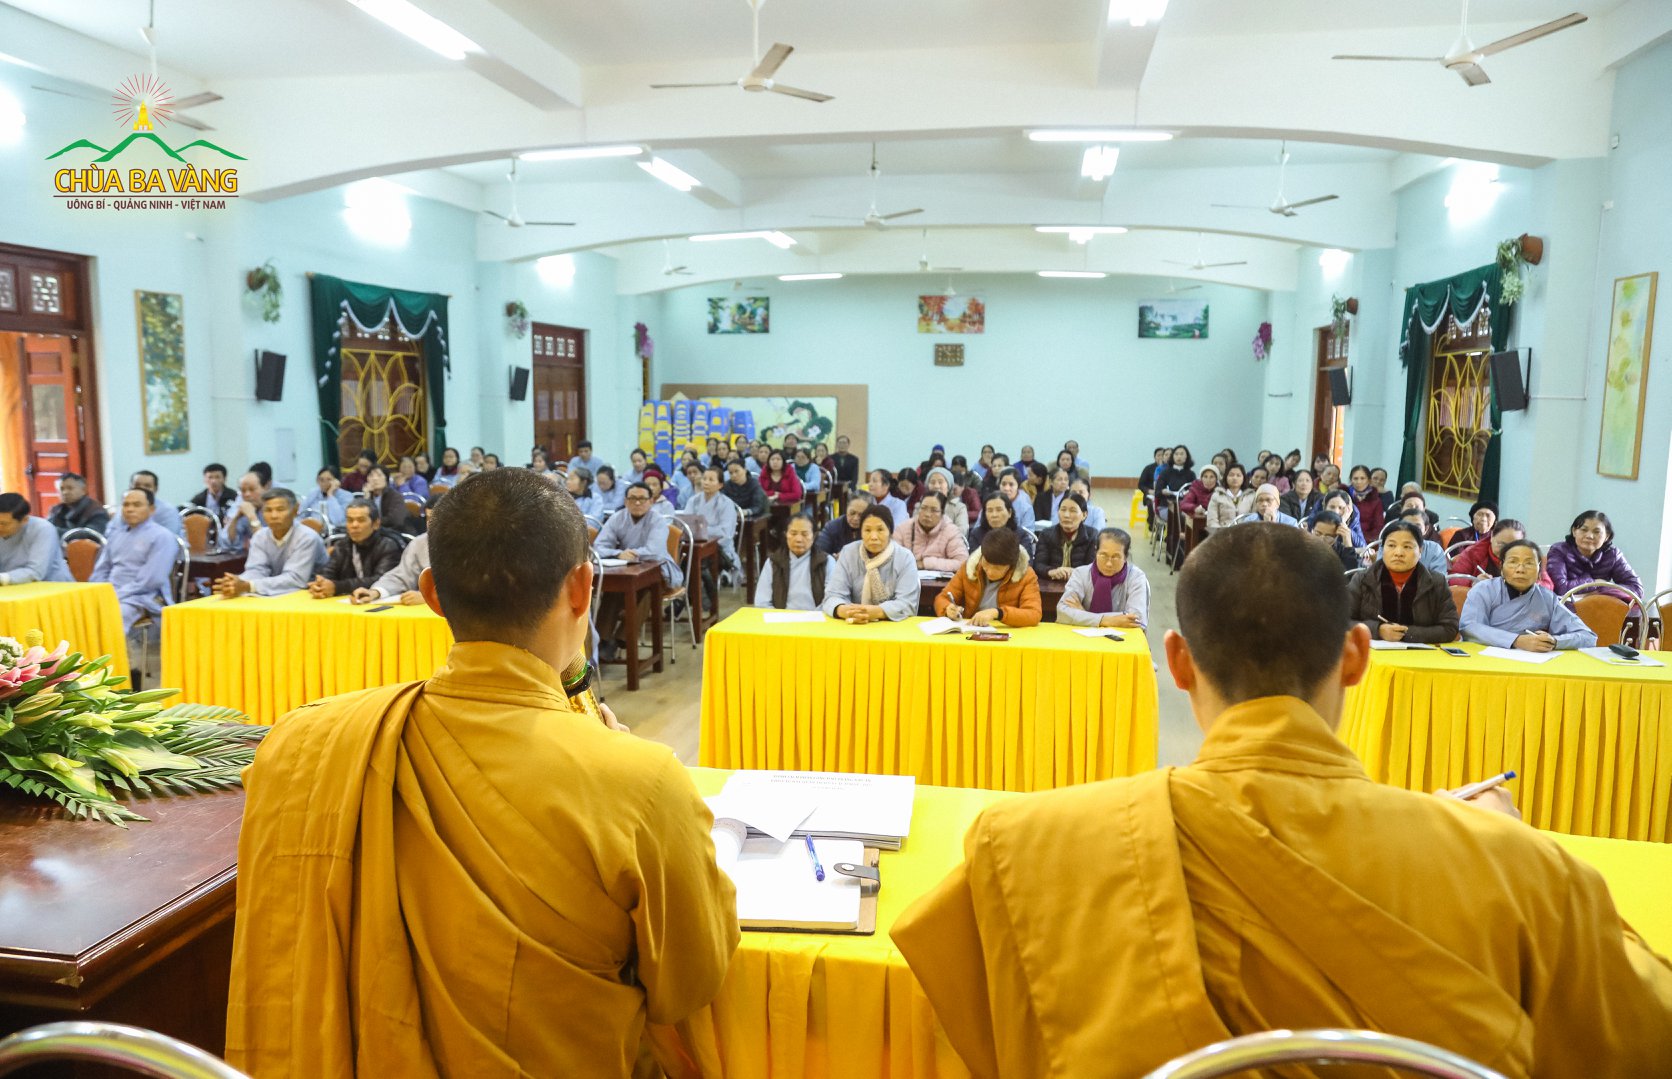 95 đạo tràng đang tu học tại chùa Ba Vàng đã vân tập về chùa tham dự buổi tổng kết cuối năm 2018.